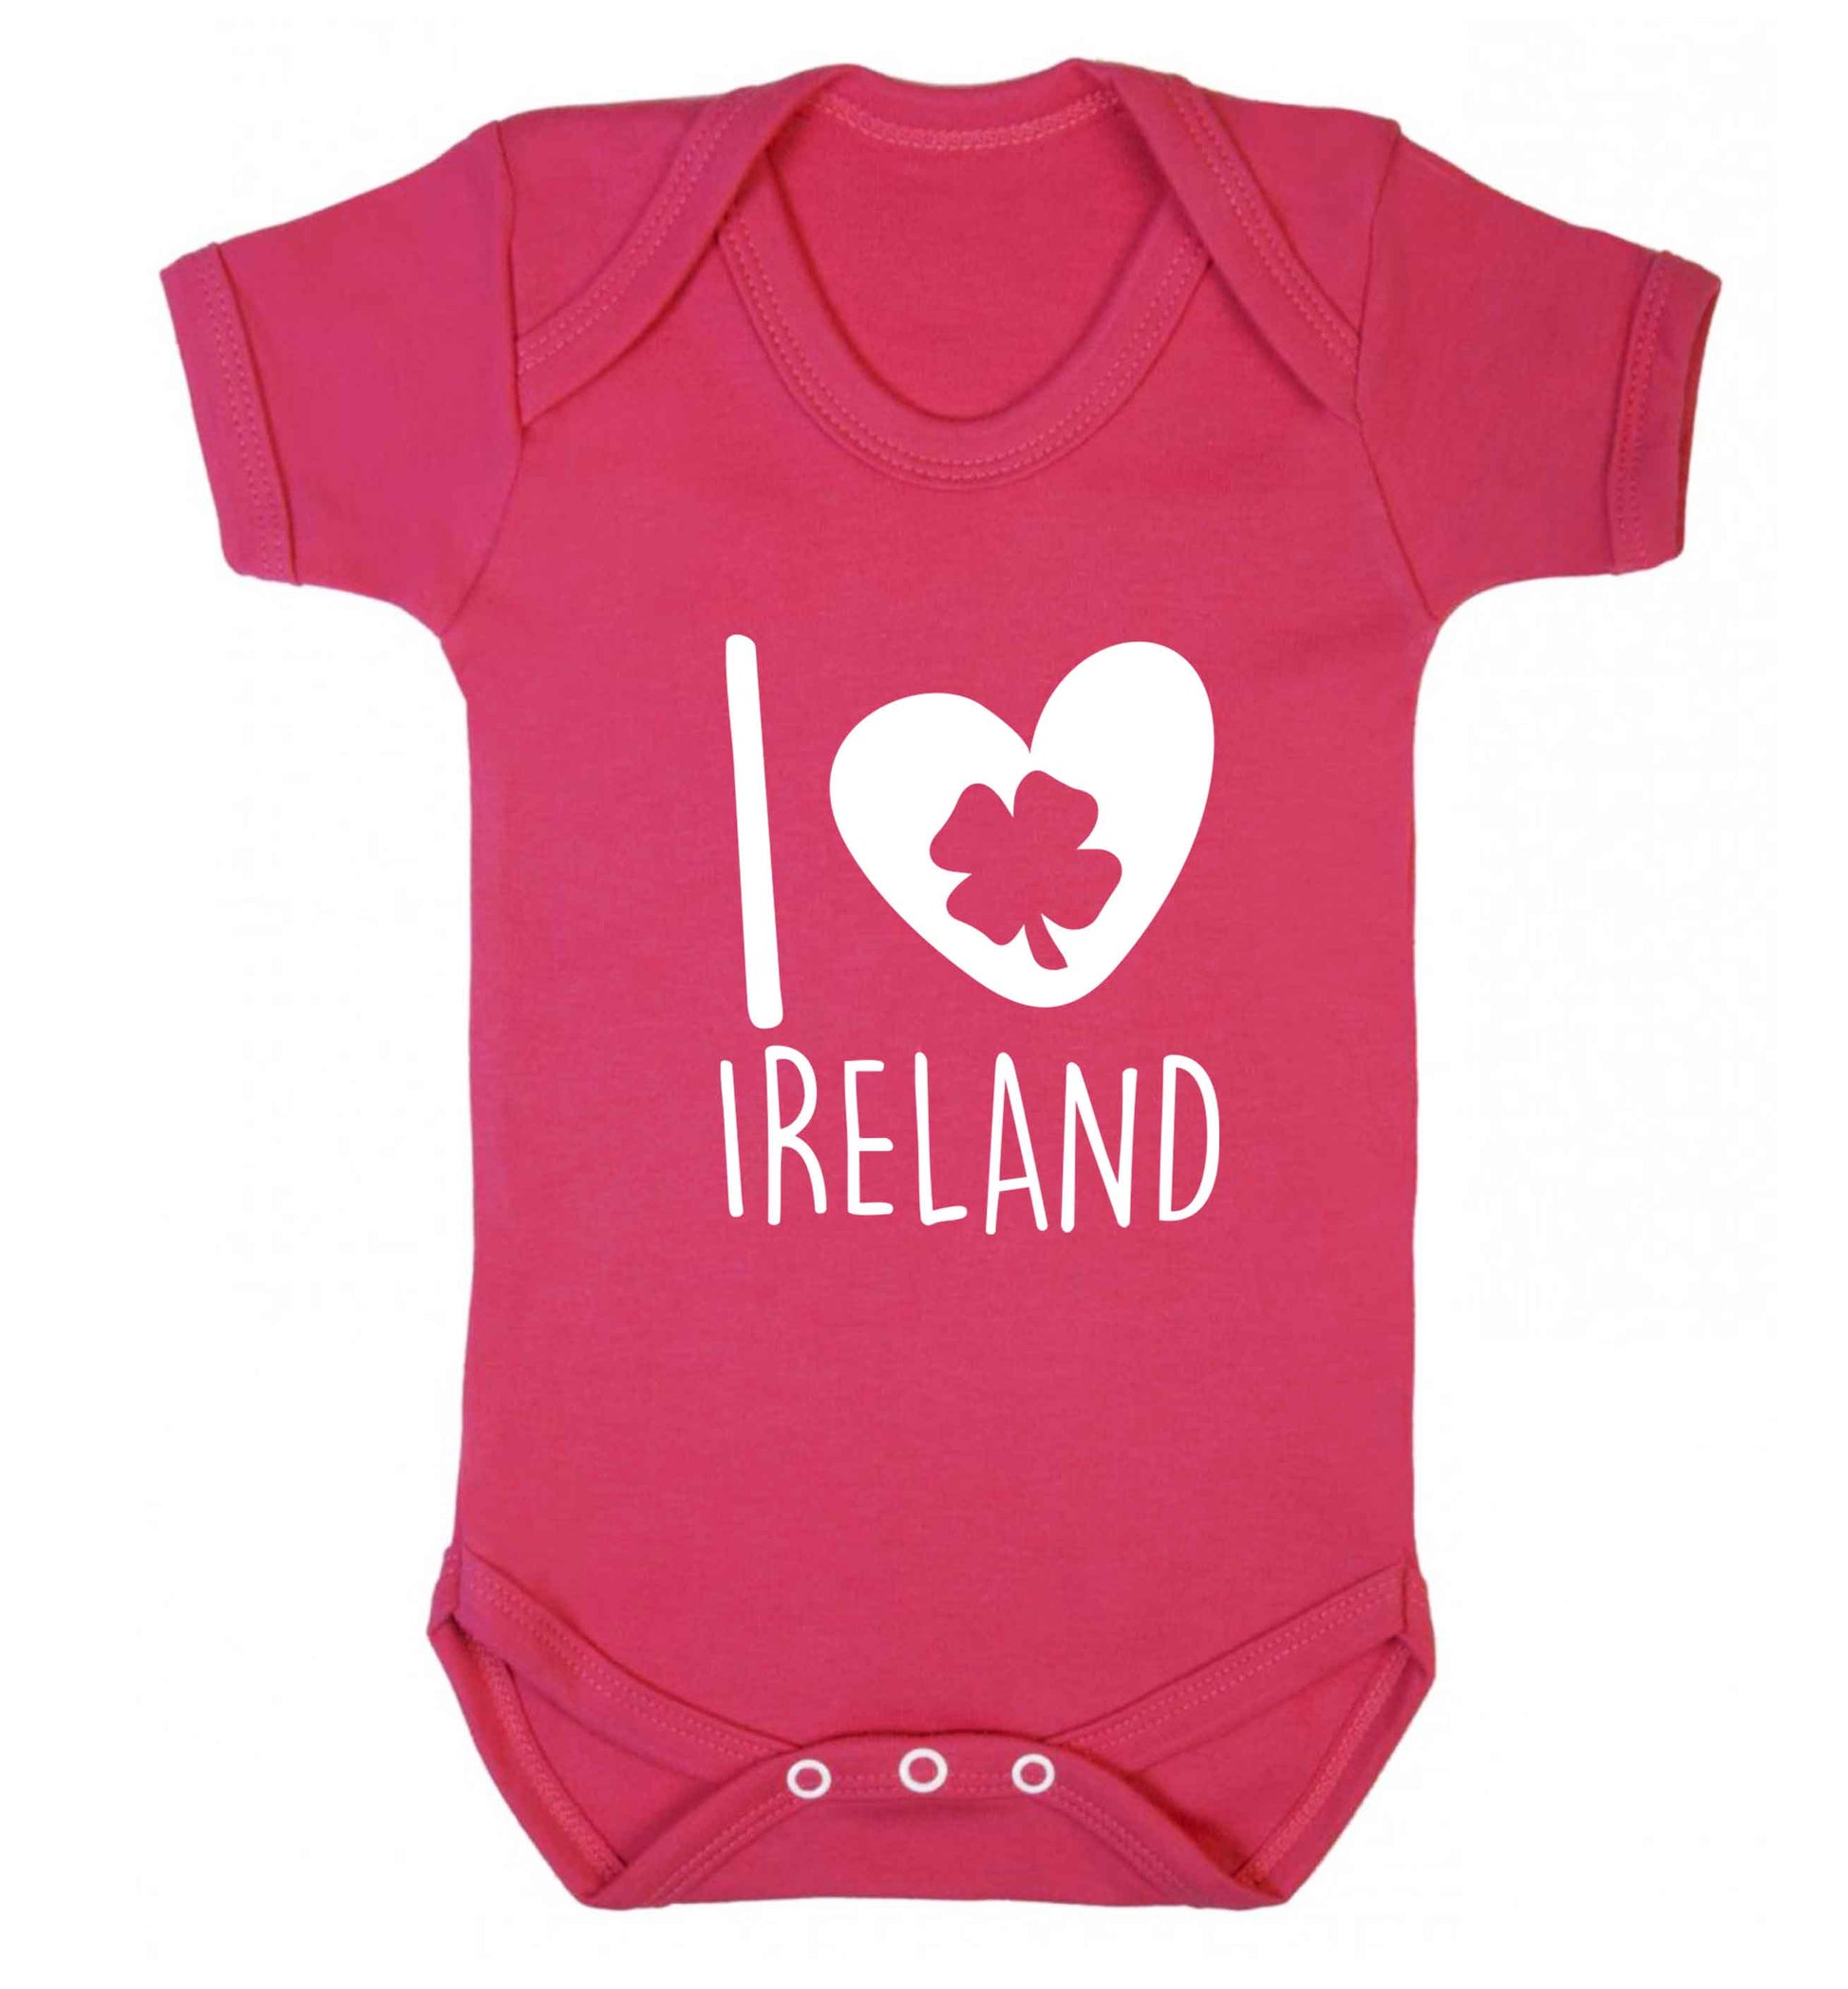 I love Ireland baby vest dark pink 18-24 months